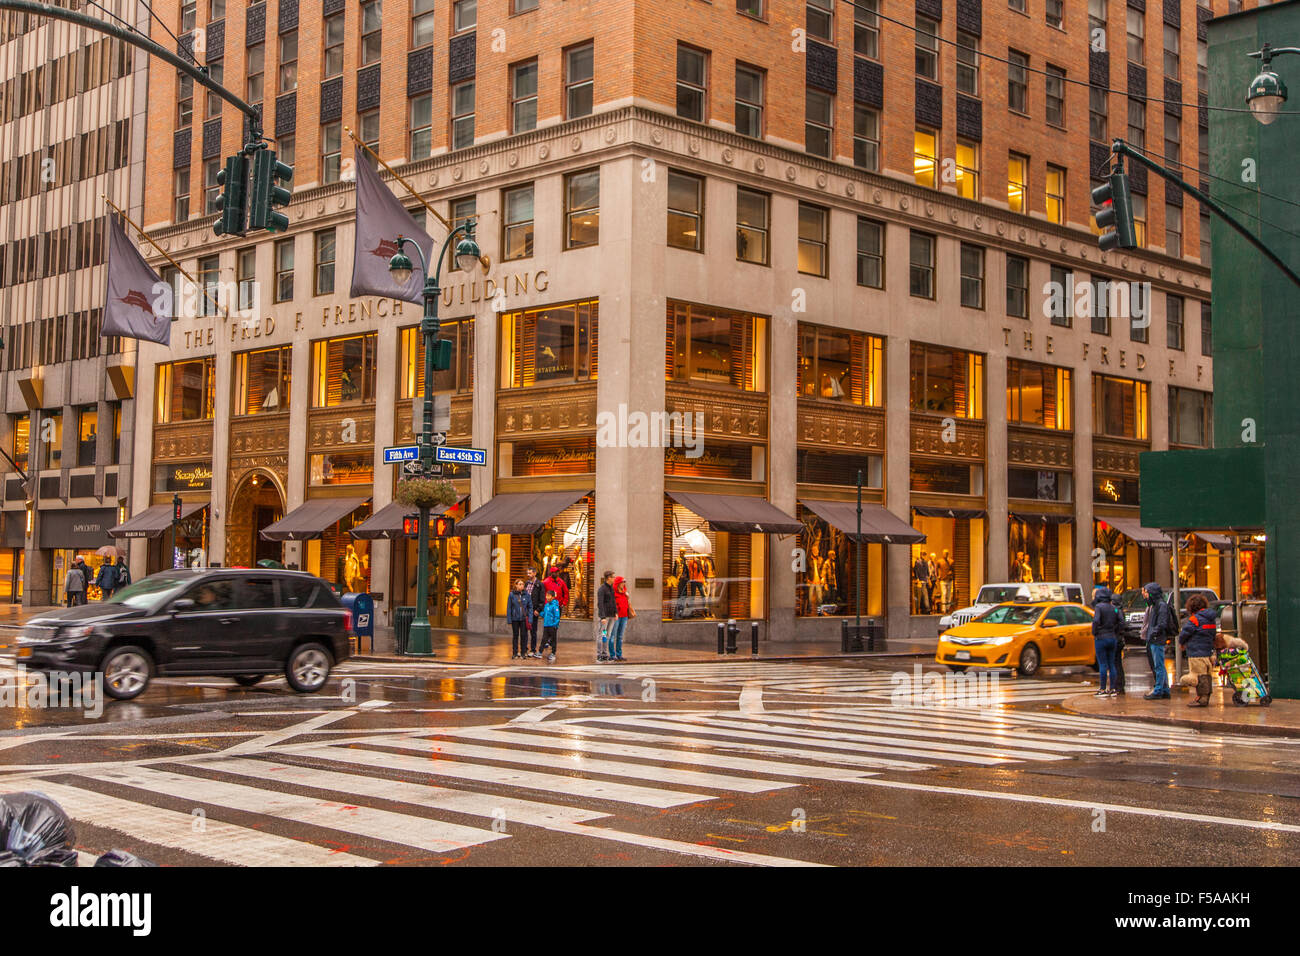 Die Fred F. Französisch Building, 5th Avenue, New York City, Vereinigte Staaten von Amerika. Stockfoto